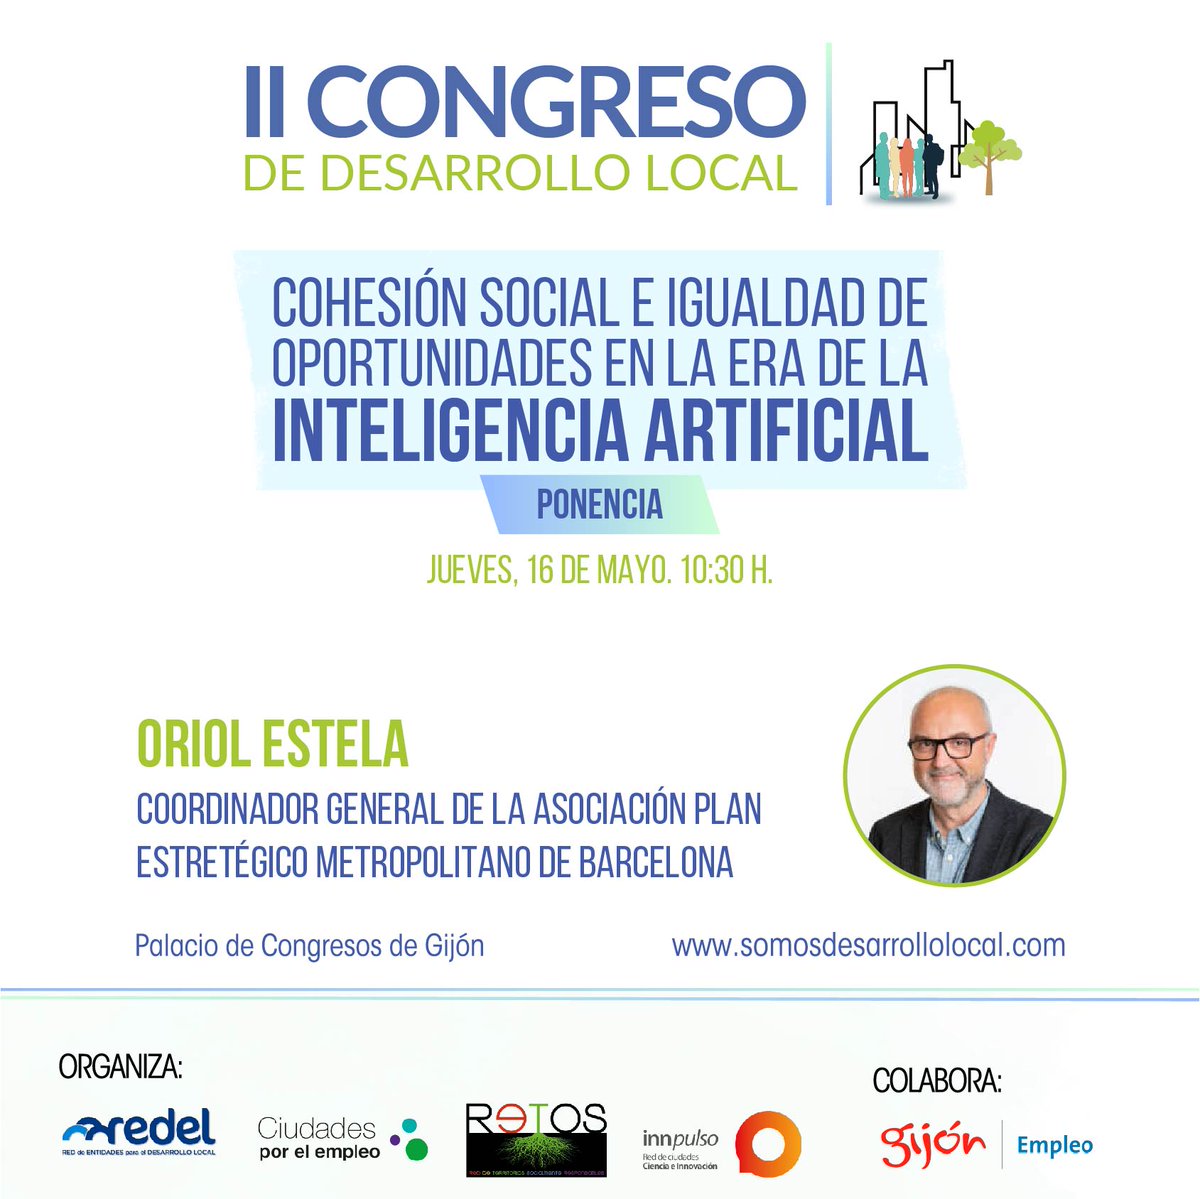 ¡Atención! @estelabo, Coordinador de la Asociación Plan Estratégico Metropolitano de Barcelona, hablará sobre 'Cohesión Social e Igualdad de Oportunidades en la Era de la Inteligencia Artificial' en nuestro II Congreso de Desarrollo Local

#DesarrolloLocal #IA #Innovación #Gijon